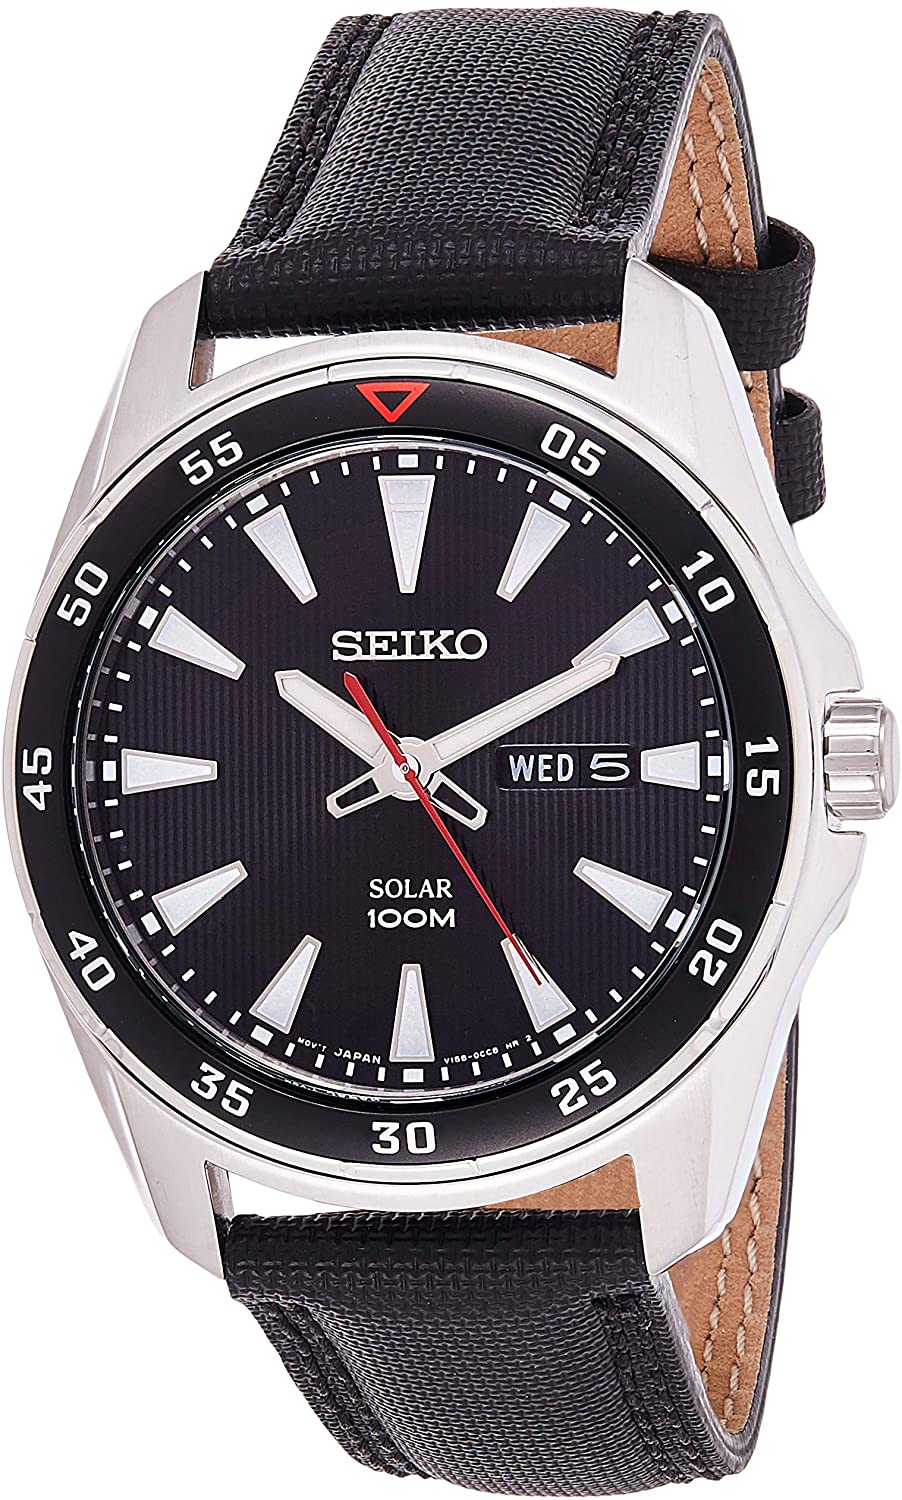 Seiko Men's Watch with Textile Strap SNE393P2